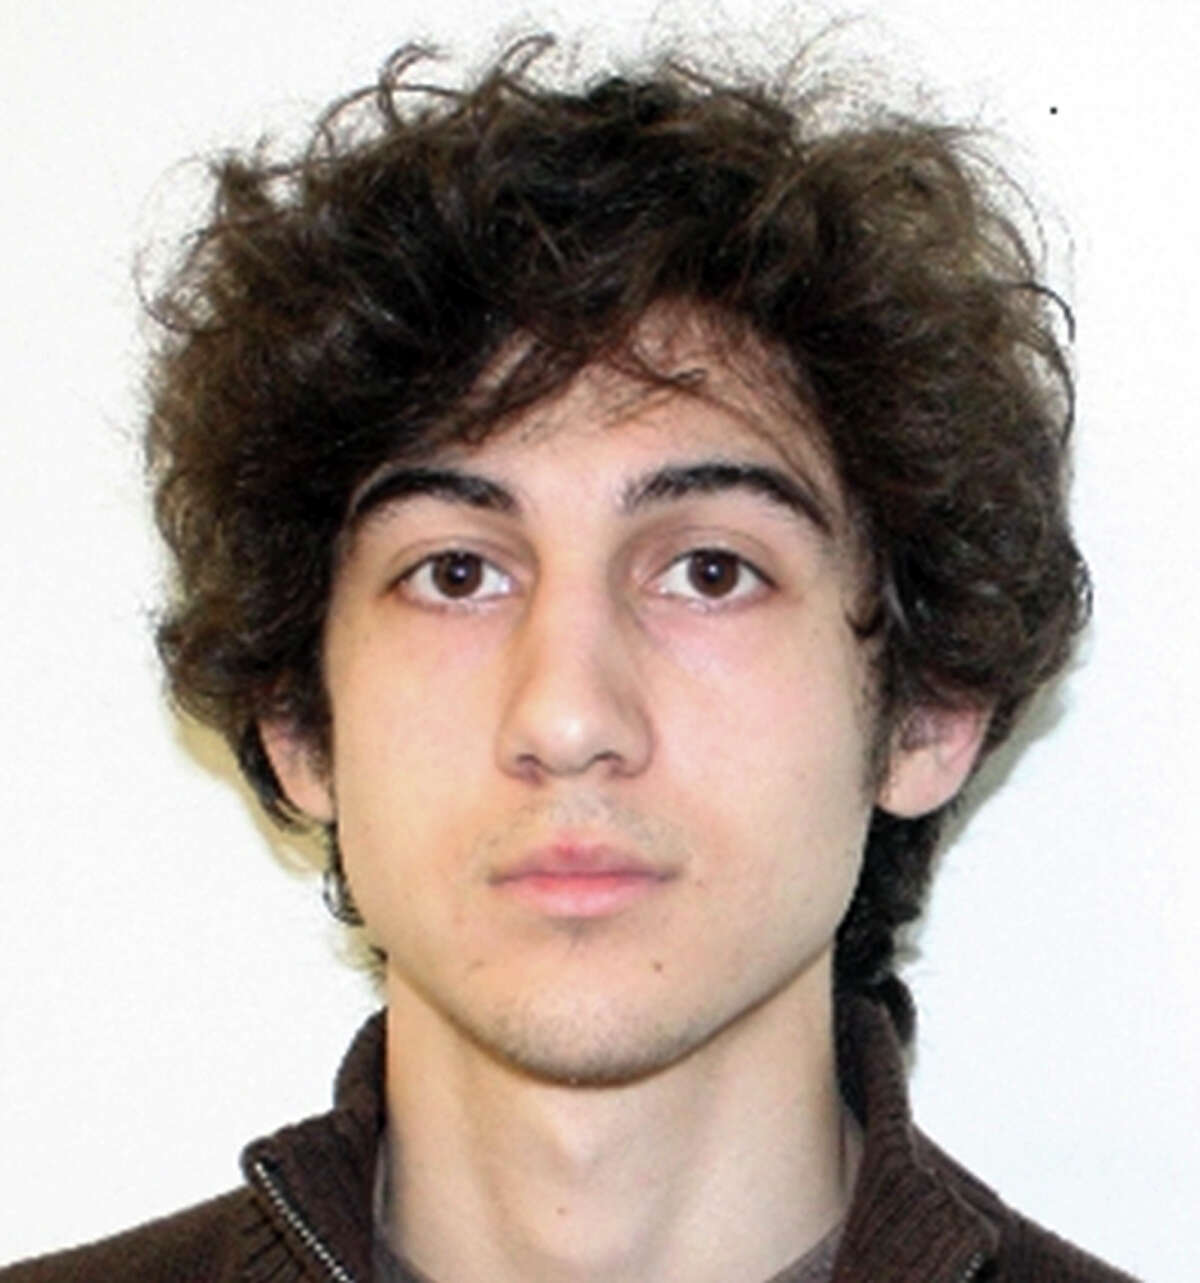 Dzhokhar Tsarnaev, 25, was sentenced to death for the deadly 2013 Boston Marathon bombing in 2013.